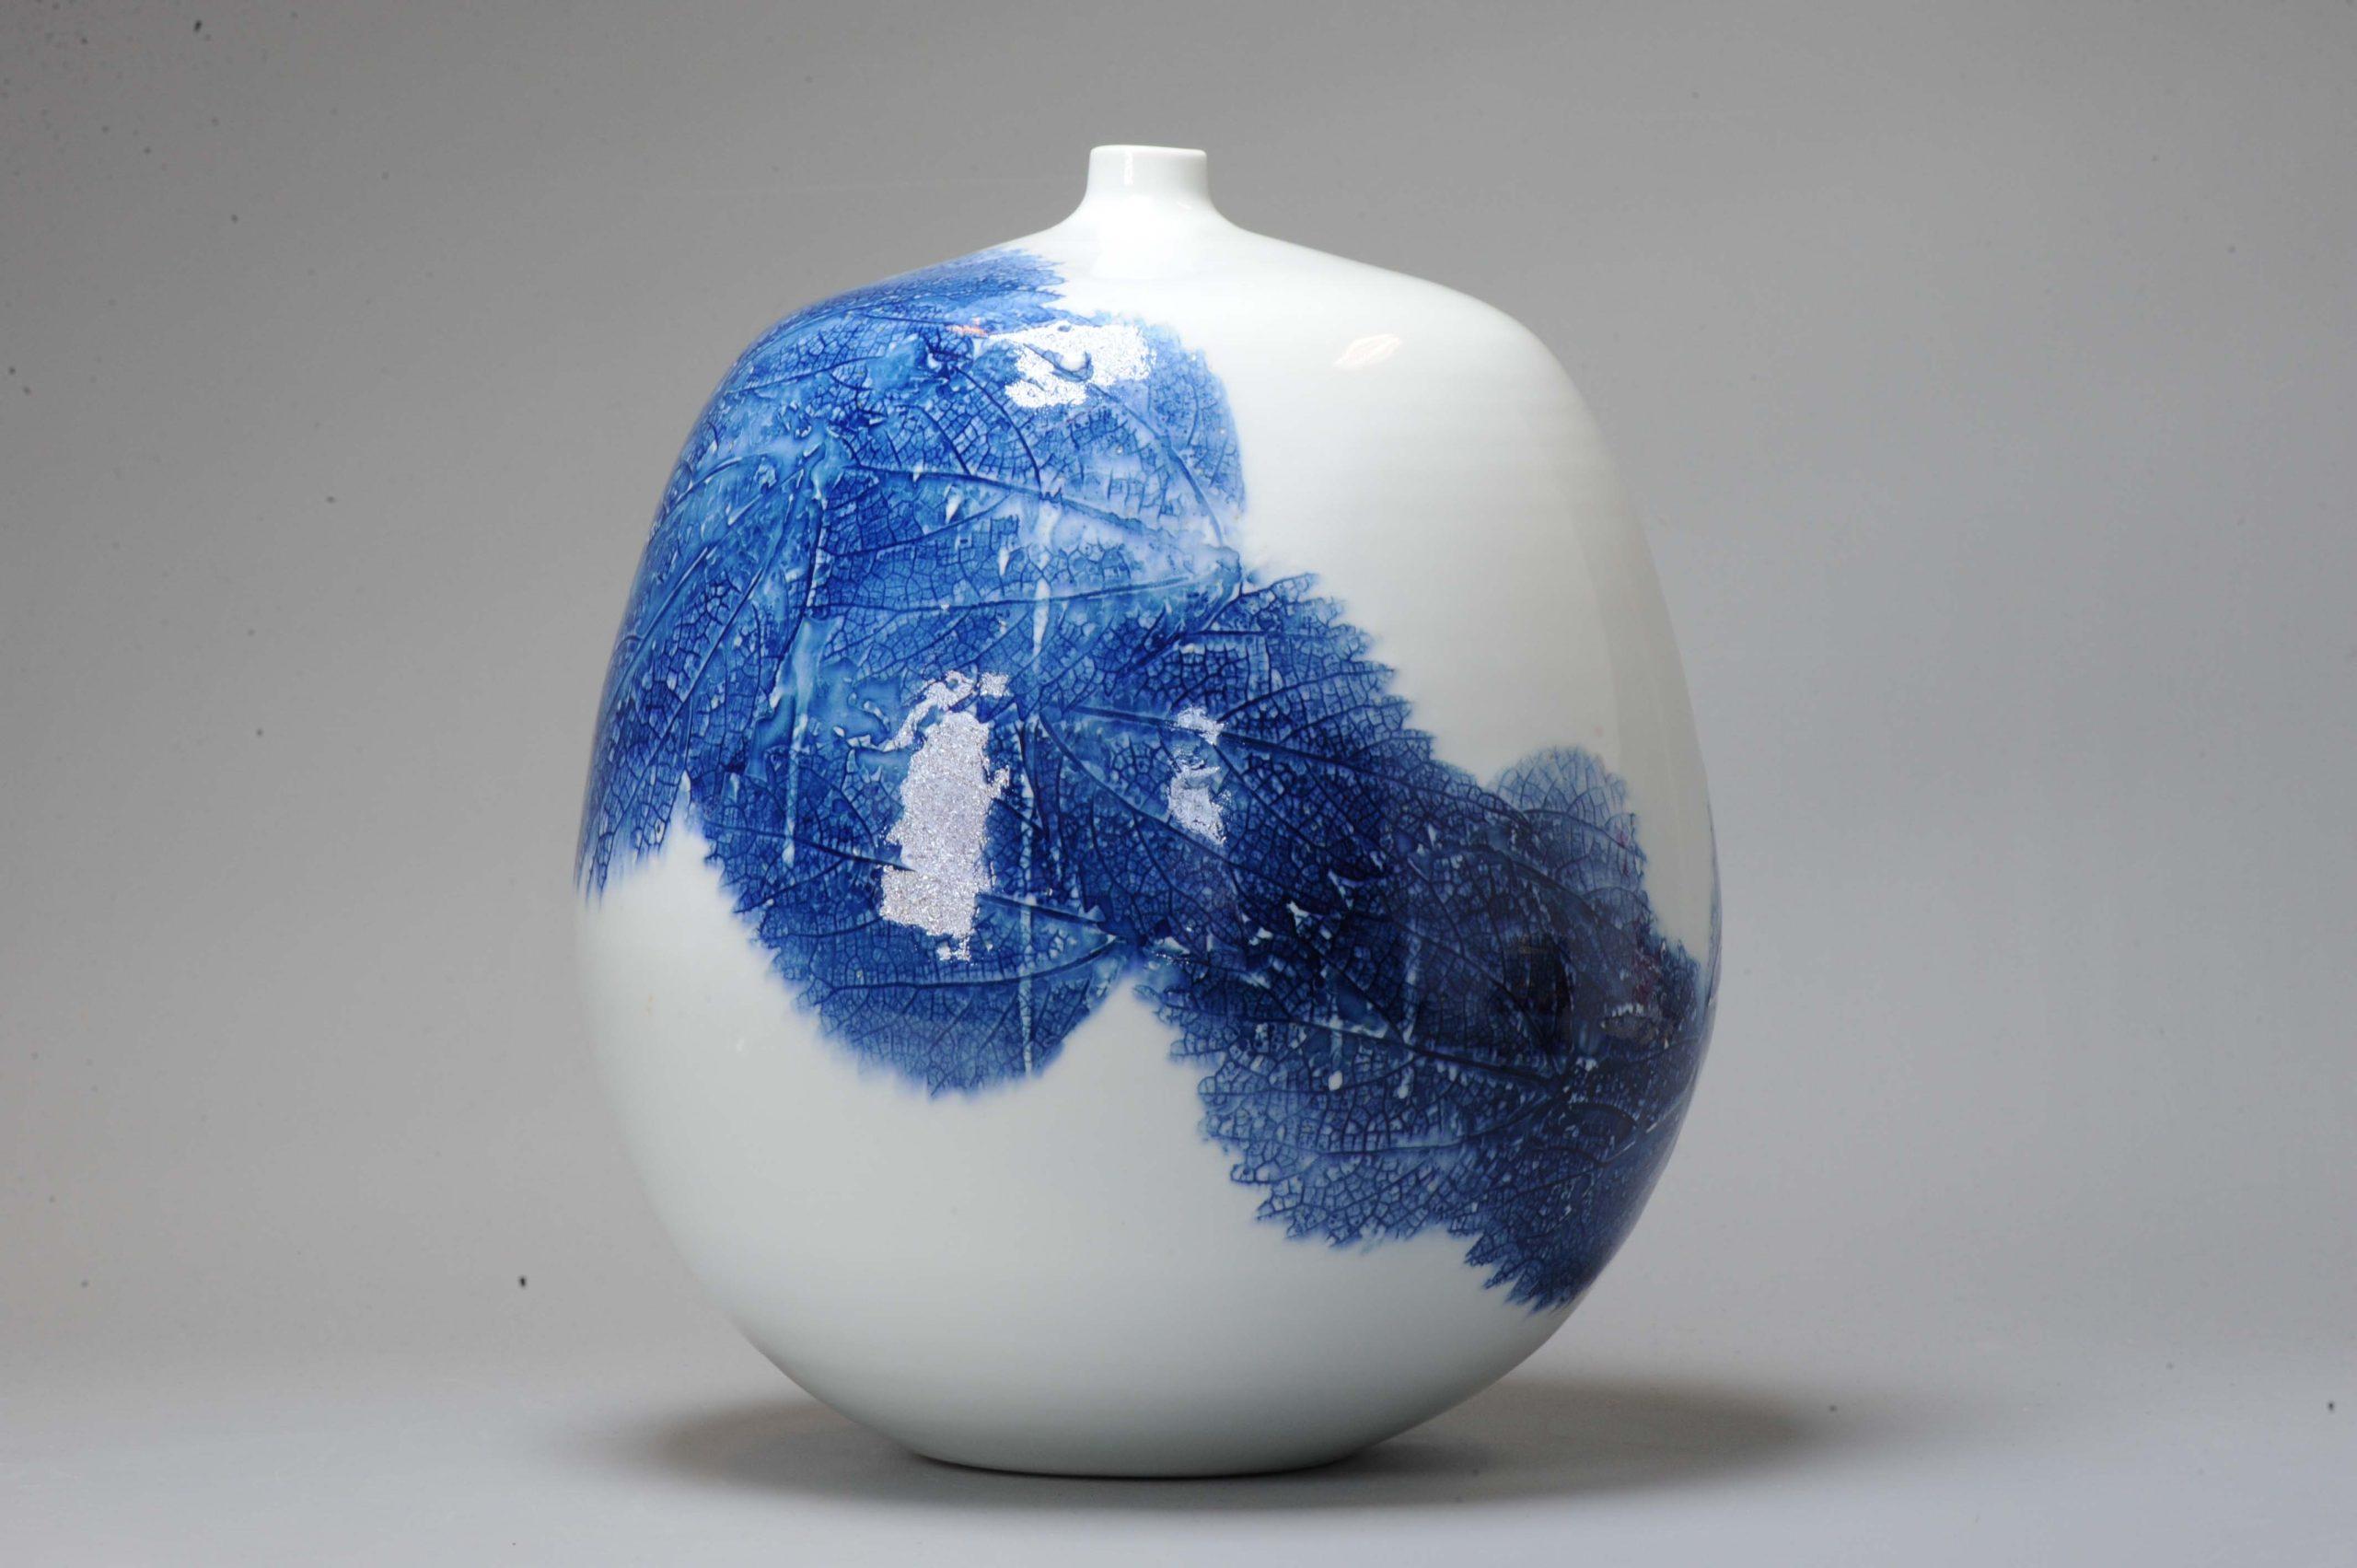 Belle et rare pièce.

Un superbe vase en porcelaine bleu et blanc, avec un tourbillon de feuilles. Fabriqué par Fuji Shumei

Fujii La spécialité de M. Aki Fujii est la technique consistant à dessiner une montagne en simulant les nervures d'une